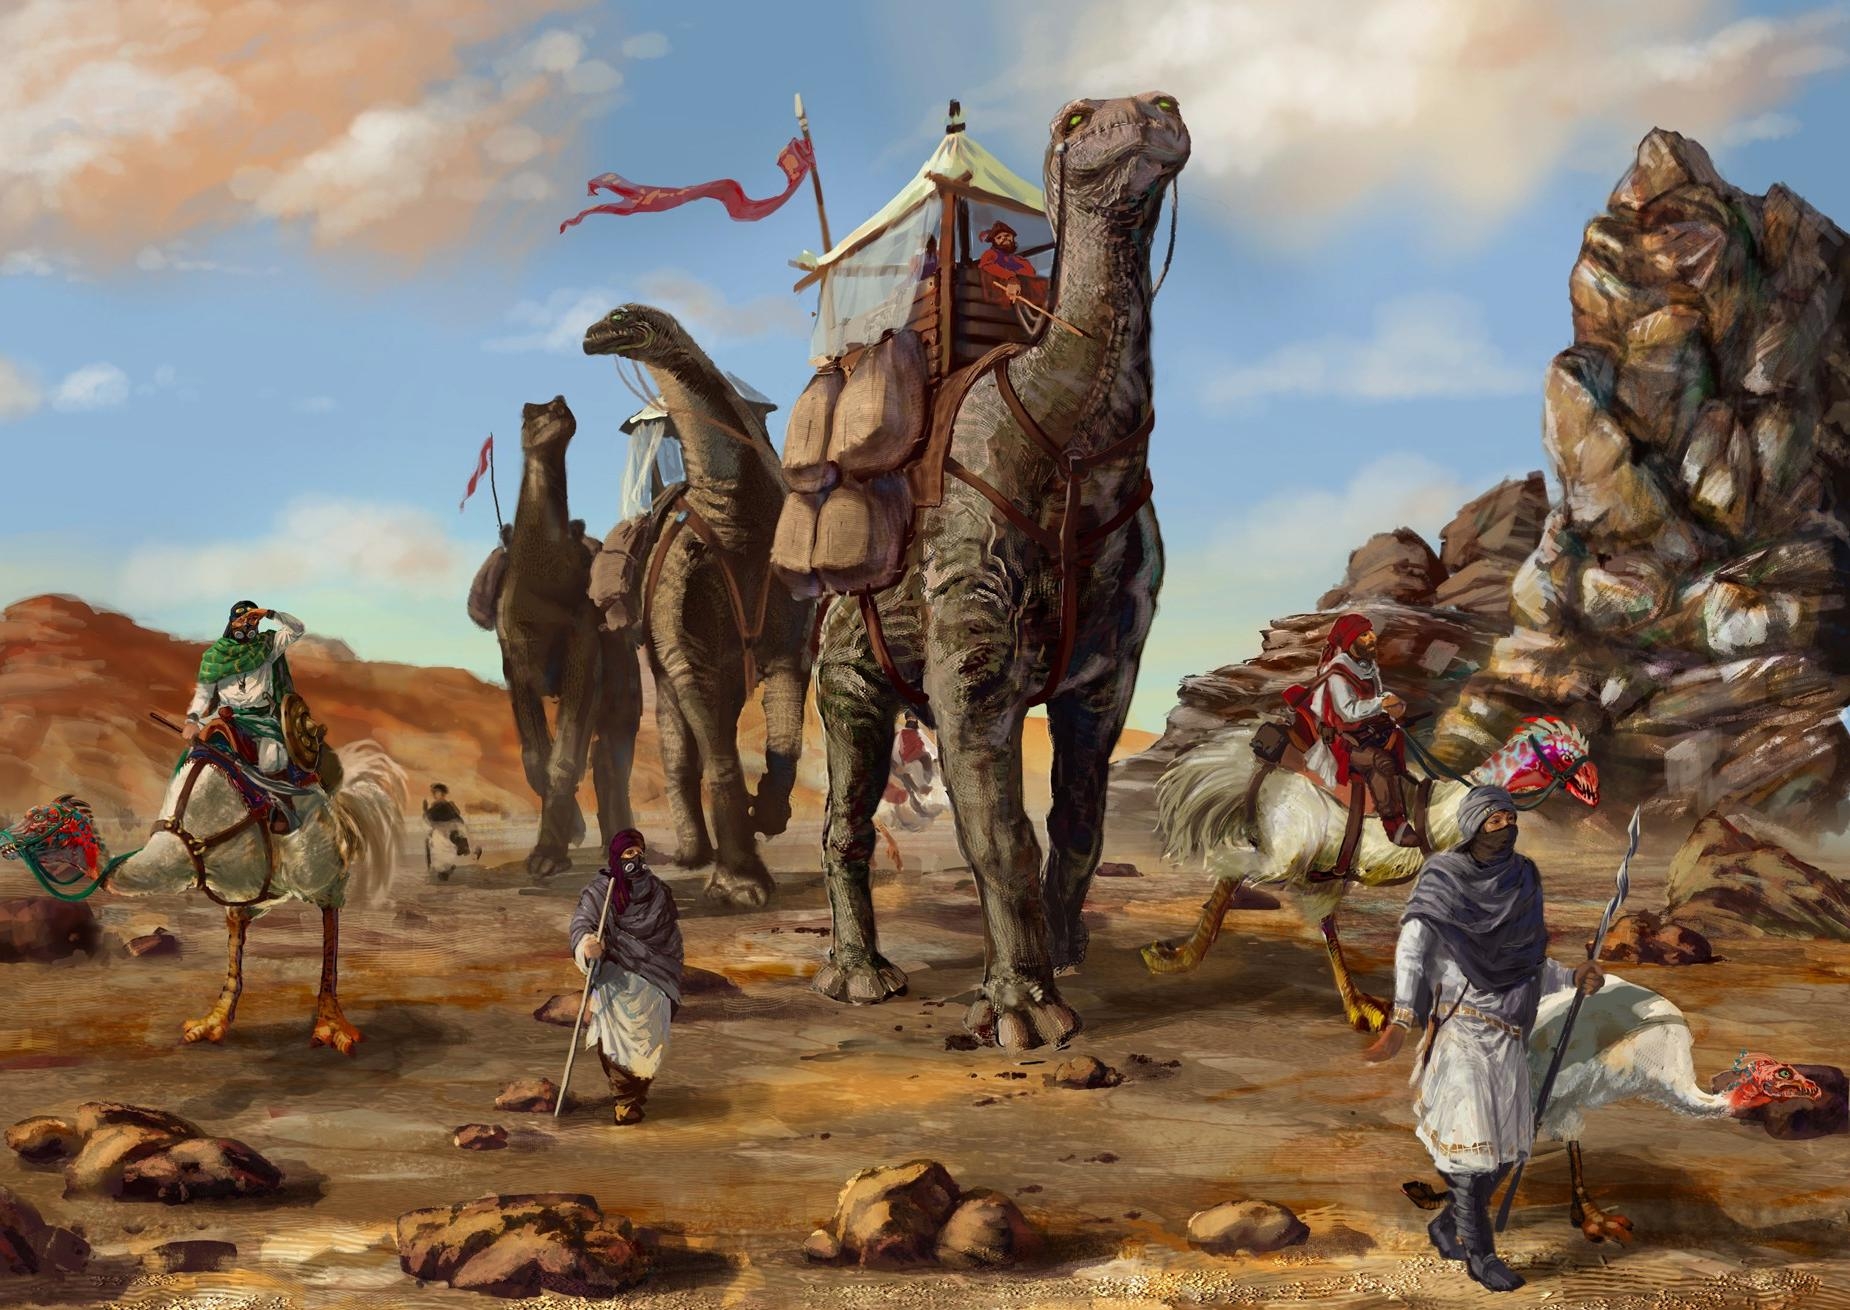 Download mobile wallpaper Bedouin, Bedouins, Caravan, Desert, Dinosaurs, Fantasy for free.